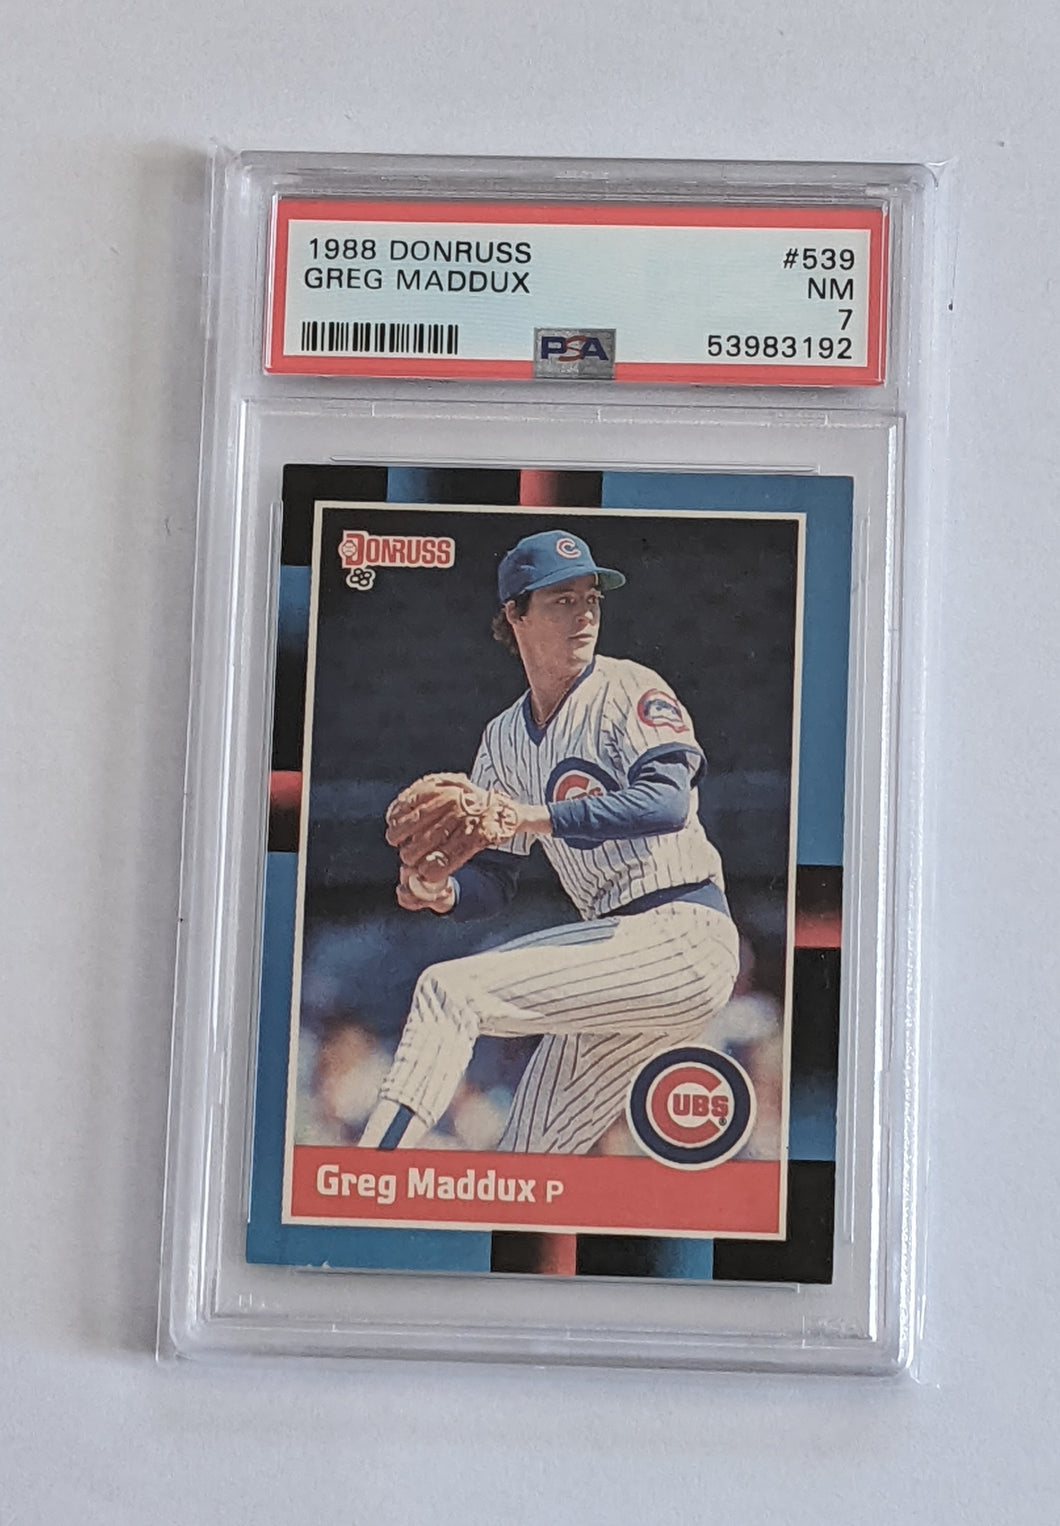 1988 Donruss Greg Maddux Card #539